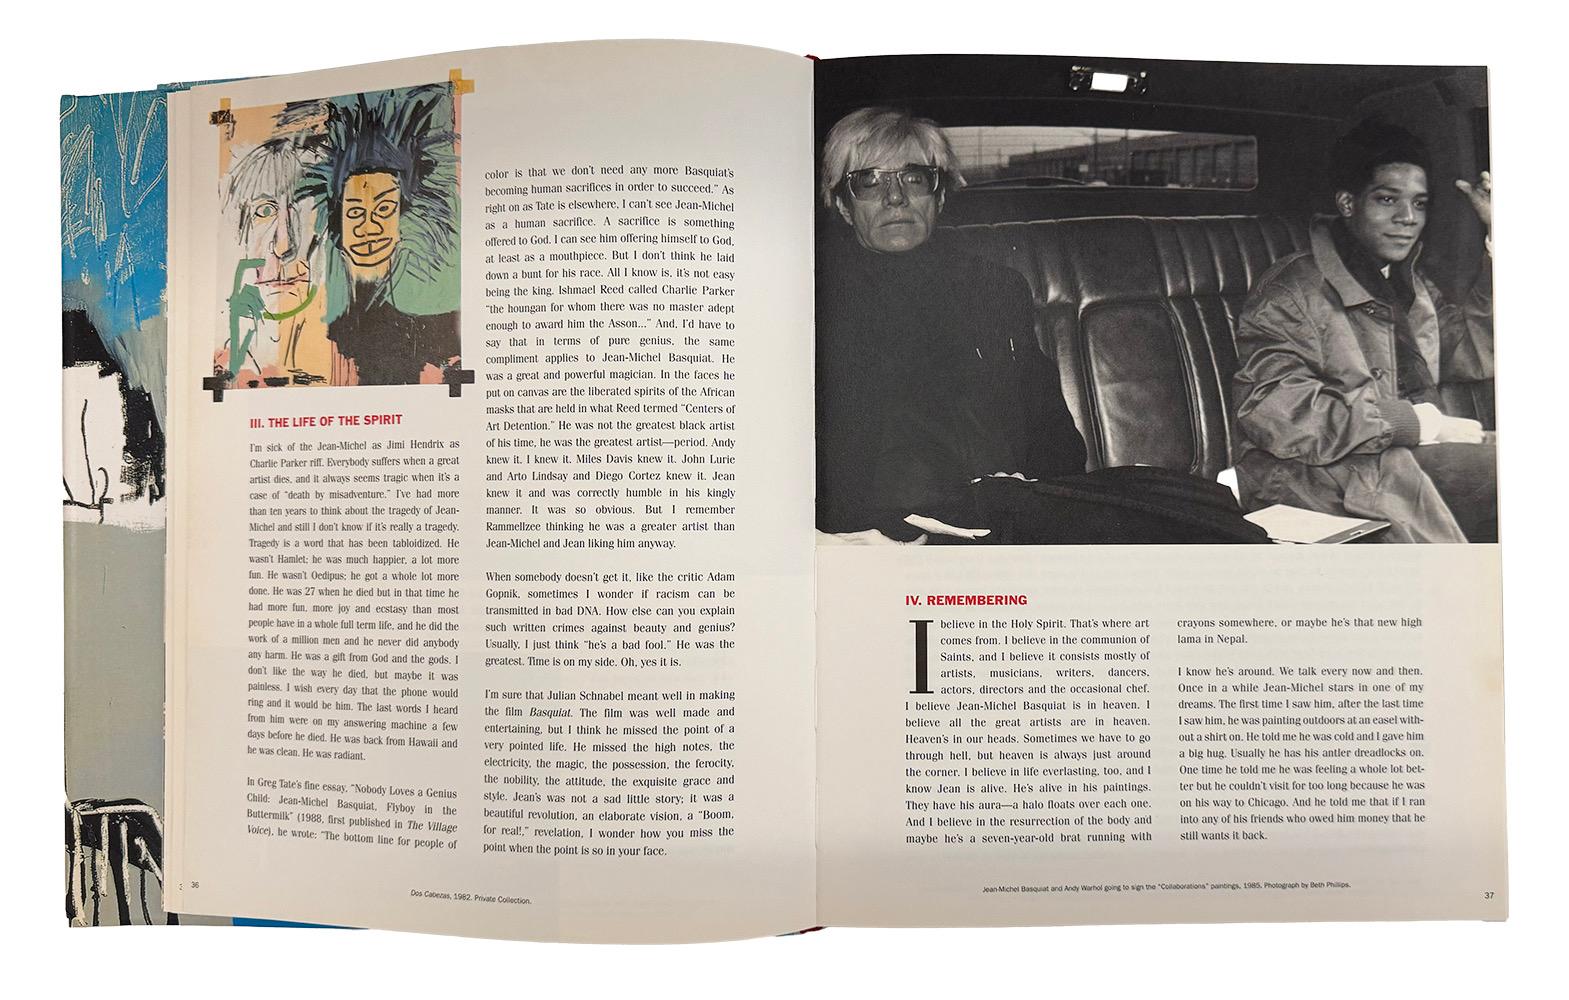 Jean-Michel Basquiat Tony Shafrazi Gallery 1999 :
u2028Rare édition limitée de 1999 d'une monographie de Basquiat à couverture rigide publiée à l'occasion d'une importante exposition posthume de Basquiat tenue à la Tony Shafrazi Gallery New York. Le